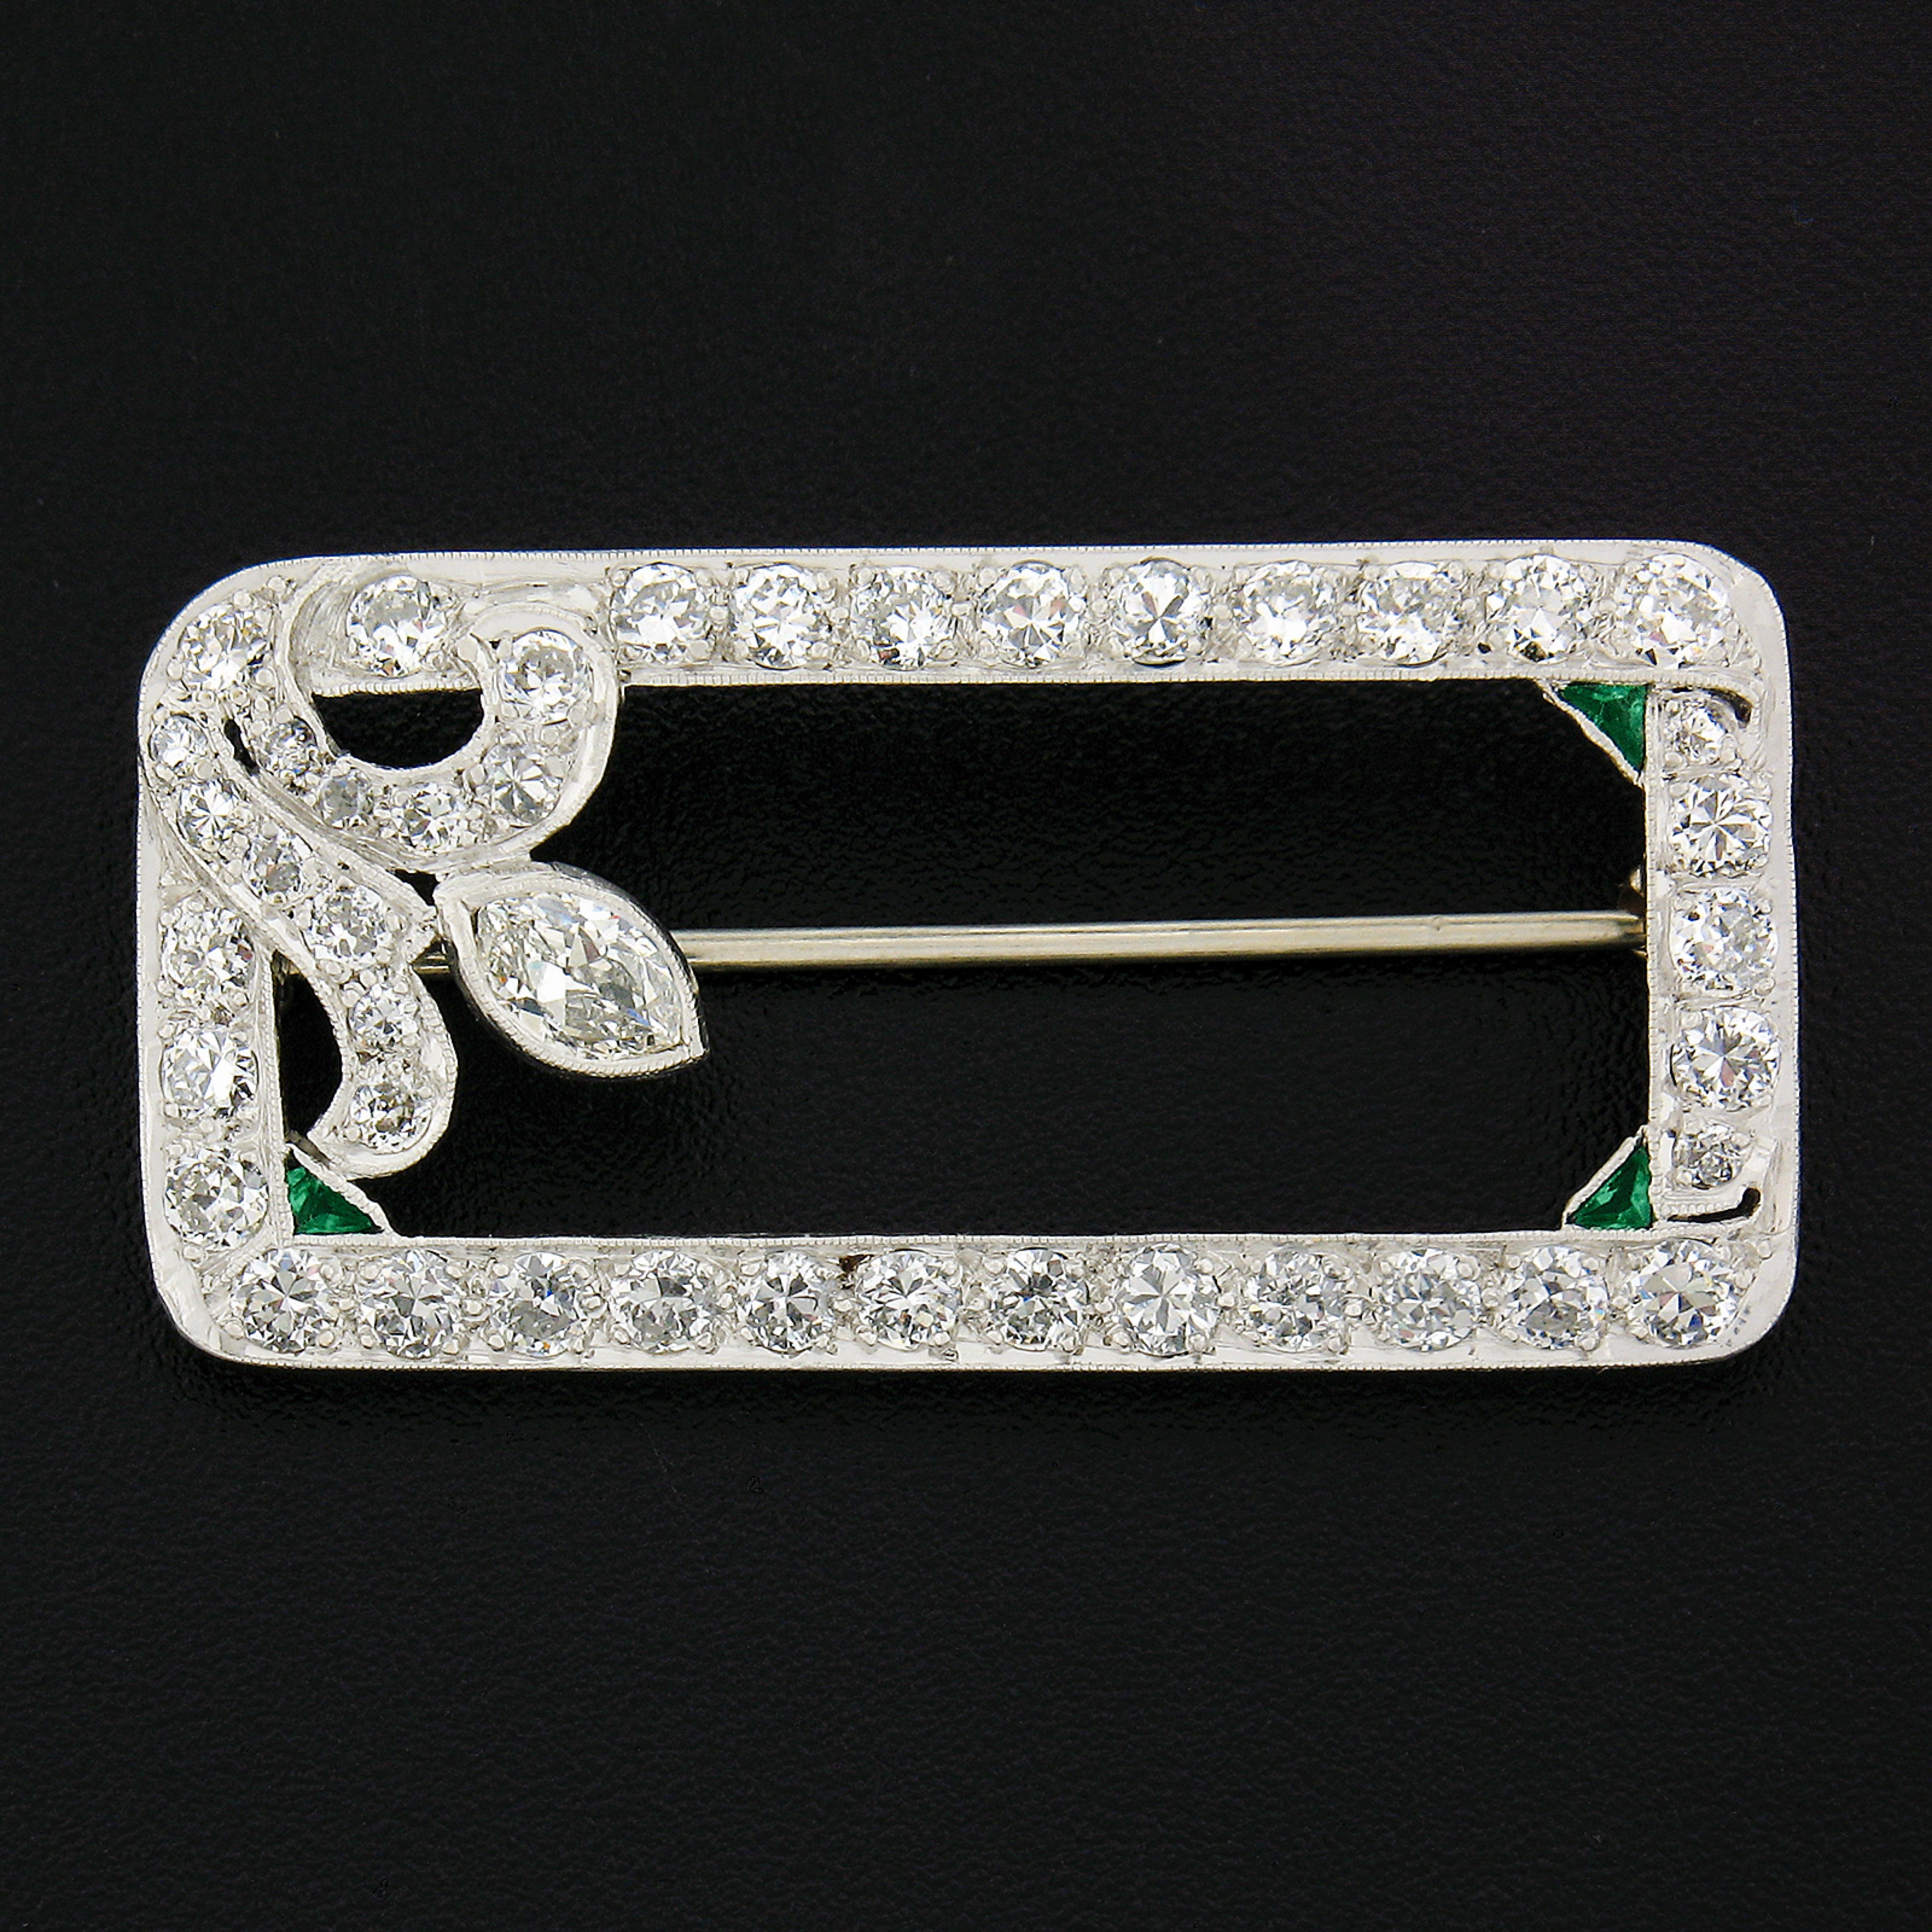 Hier haben wir eine atemberaubende Art-Deco-Brosche mit Diamanten, die aus massivem Platin gefertigt ist.  3 Ecken des inneren Rechtecks sind mit 3 dreieckig geschliffenen Smaragden mit schöner grüner Farbe, die in Lünette Milgrain Einstellungen